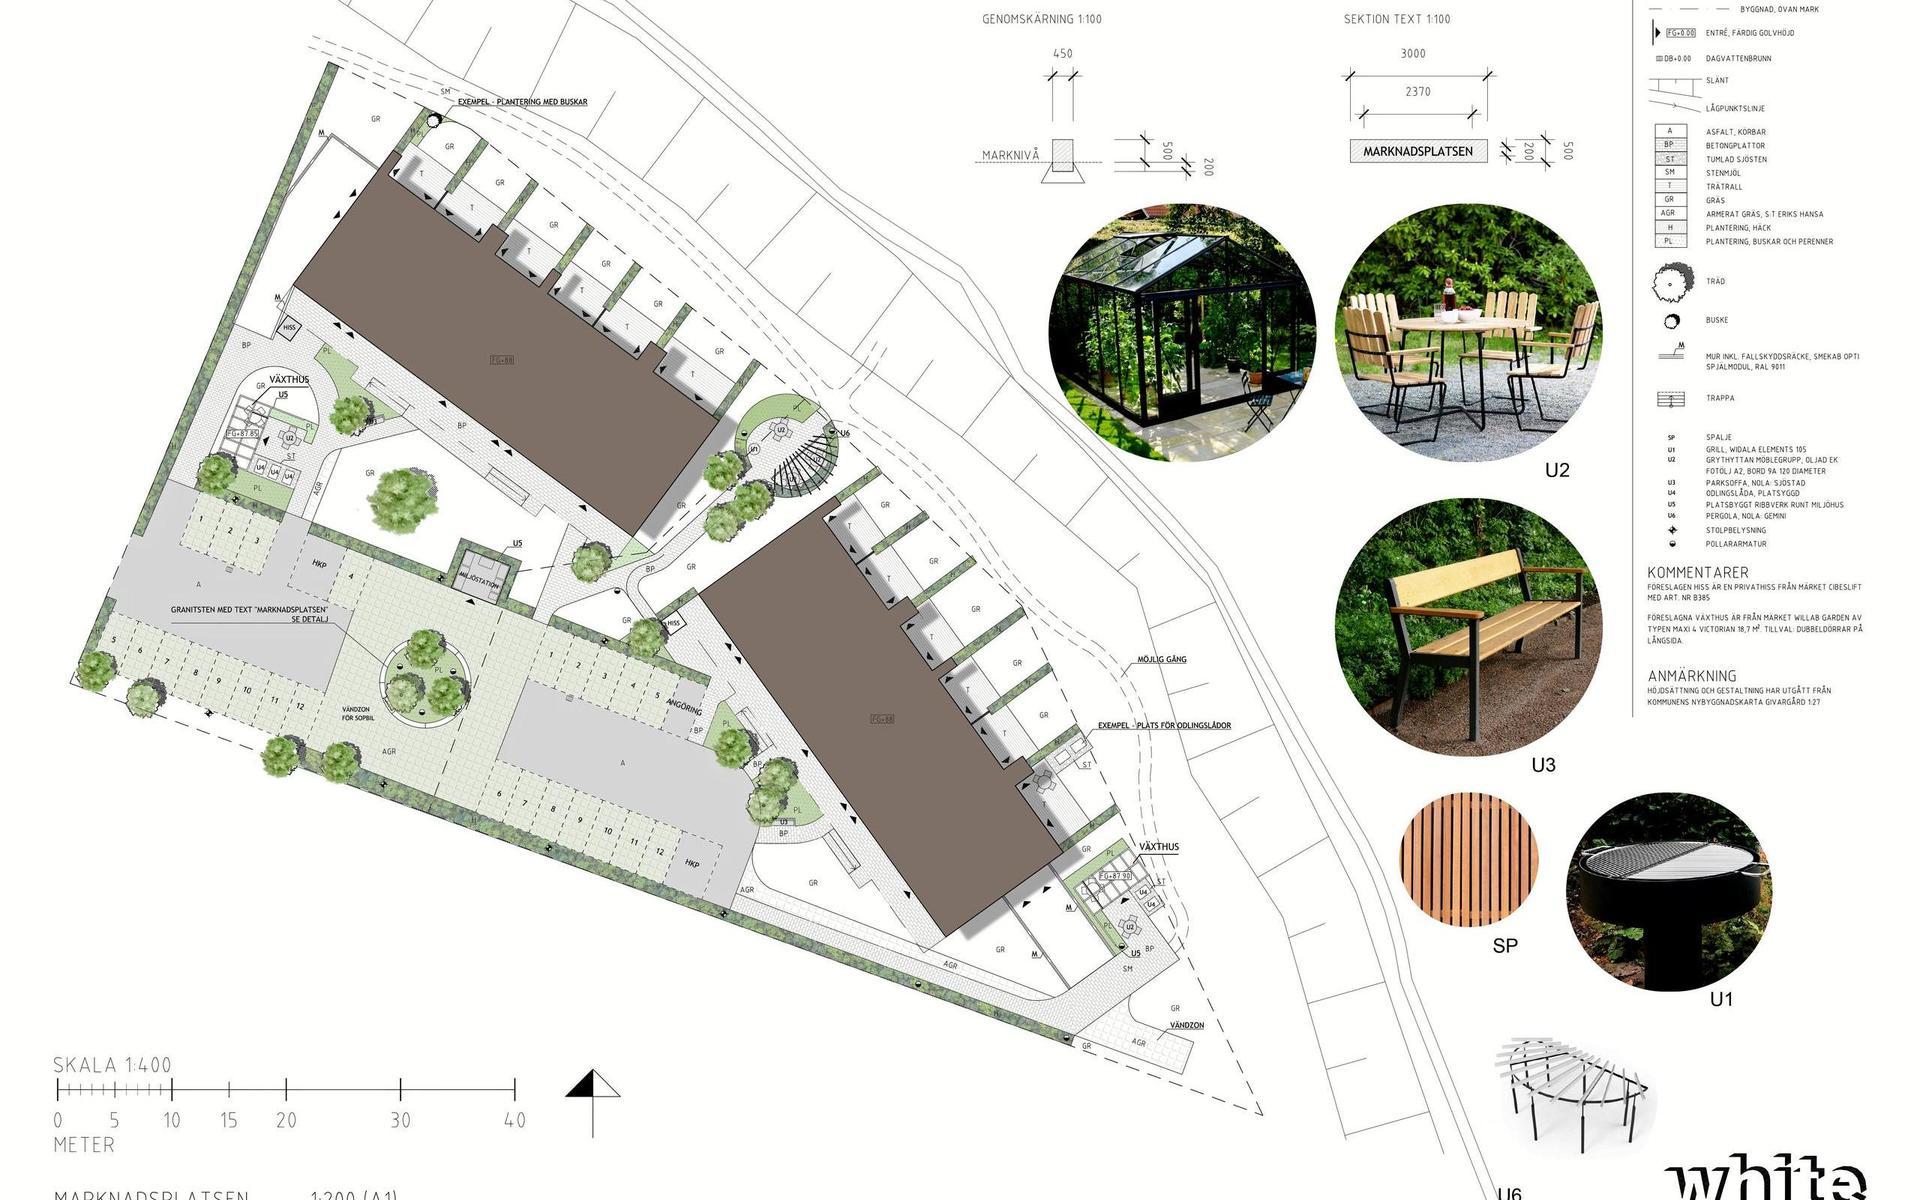 Situationsplan med en skiss på utemiljön för bostadsområdet Marknadsplatsen. Arkitektfirman White har designat utemiljön med grillplats mellan de två huskropparna, miljöstation och grönytor.